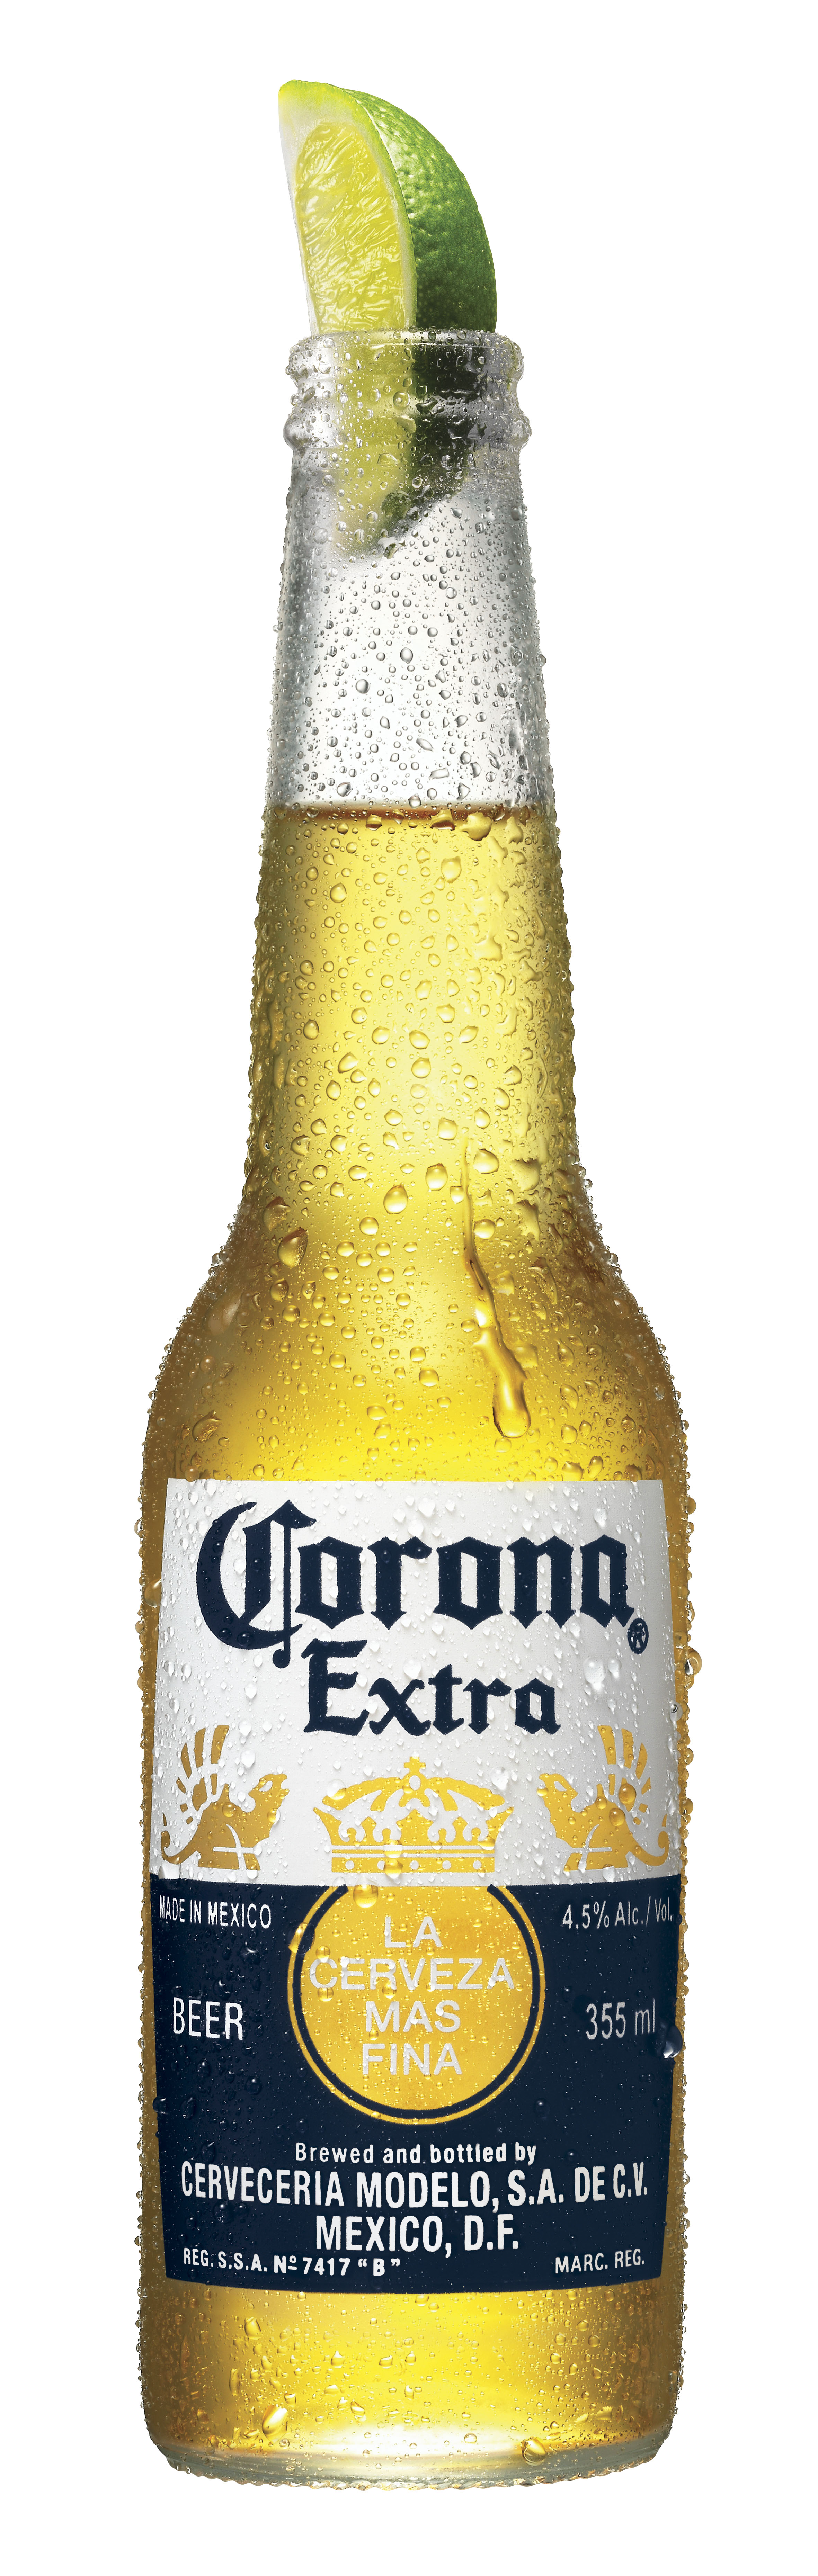 Corona bottle